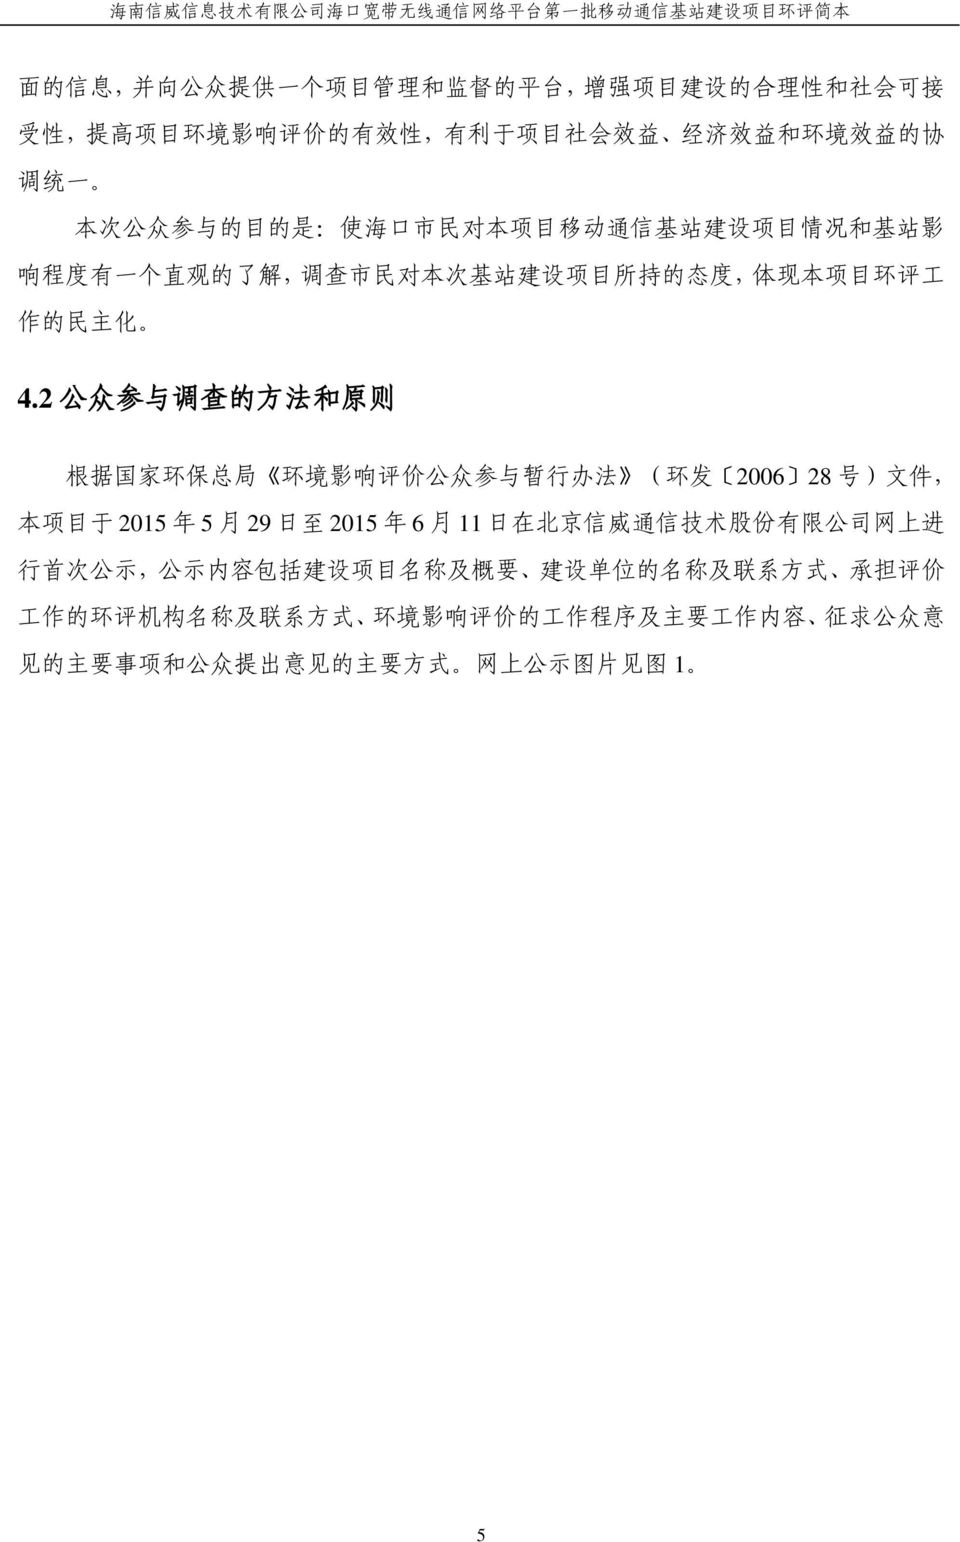 2 公 众 参 与 调 查 的 方 法 和 原 则 根 据 国 家 环 保 总 局 环 境 影 响 评 价 公 众 参 与 暂 行 办 法 ( 环 发 2006 28 号 ) 文 件, 本 项 目 于 2015 年 5 月 29 日 至 2015 年 6 月 11 日 在 北 京 信 威 通 信 技 术 股 份 有 限 公 司 网 上 进 行